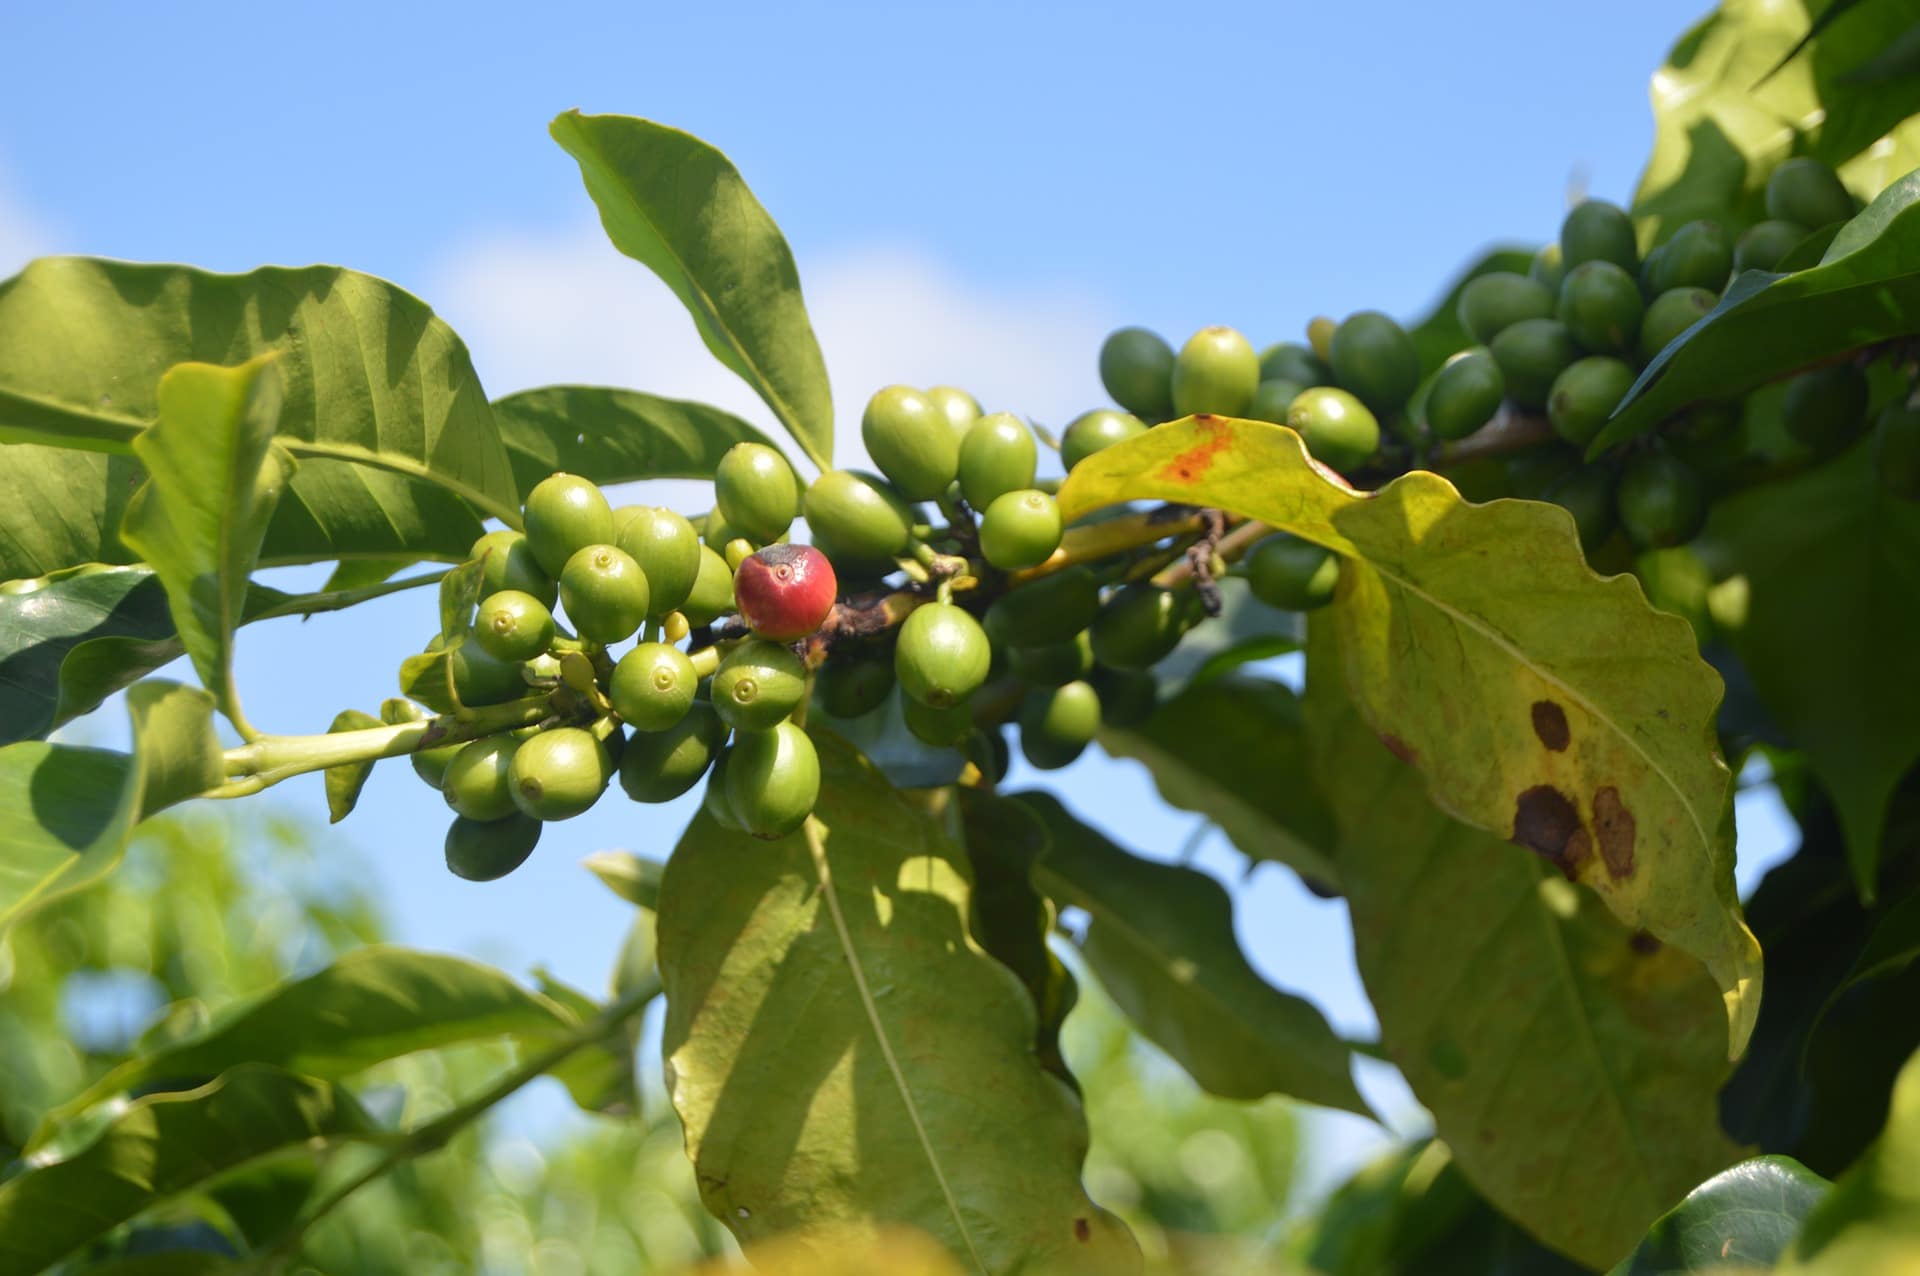 Zelená káva má pozitivní vliv na hubnutí / foto: pixabay.com